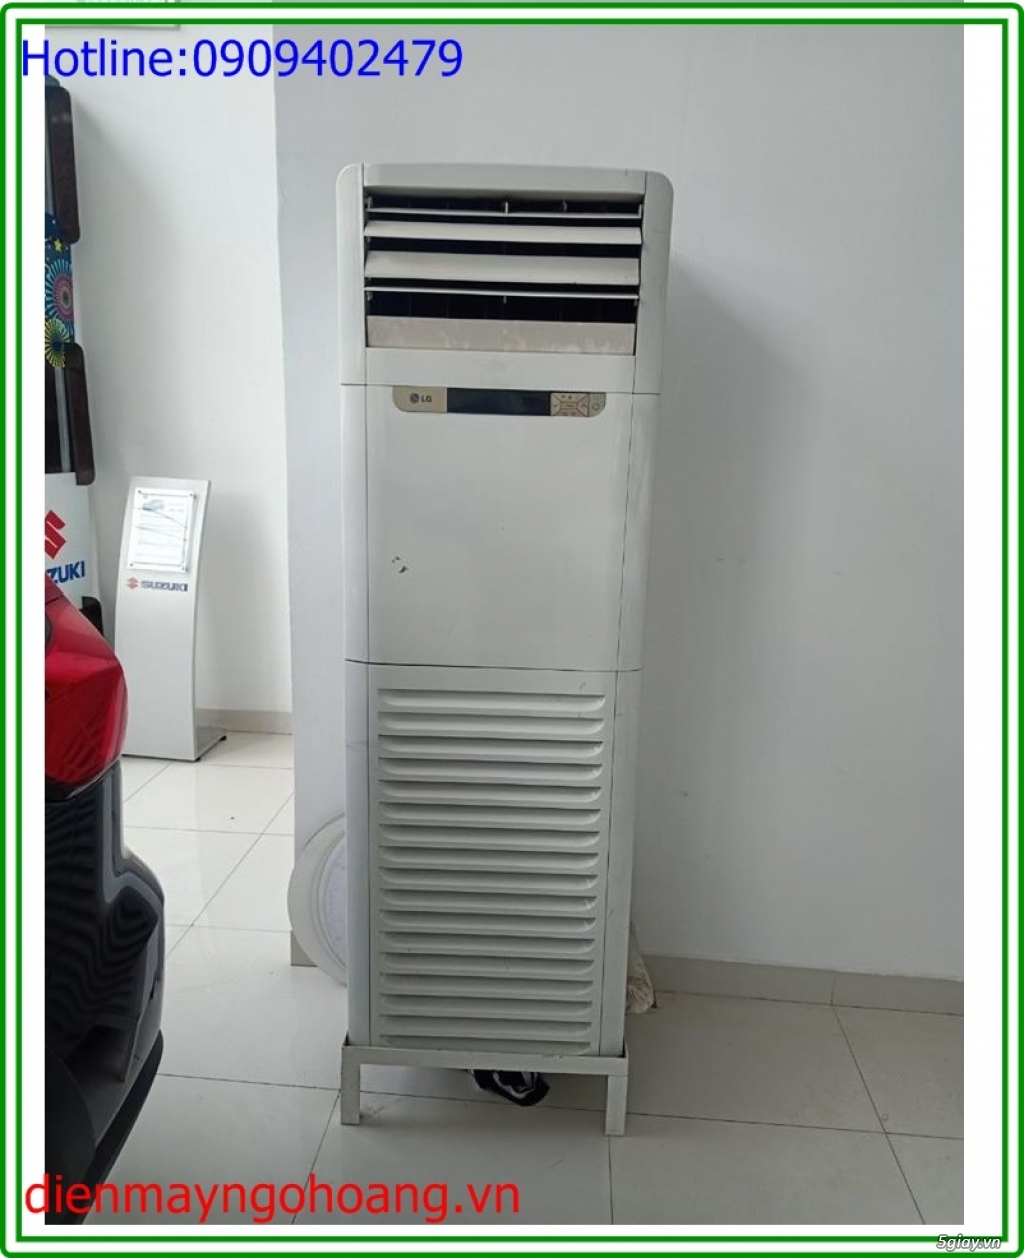 Máy lạnh tủ đứng cũ 5hp , 5.5hp ( LG,Daikin,Samsung,Panasonic,Funiki) - 4